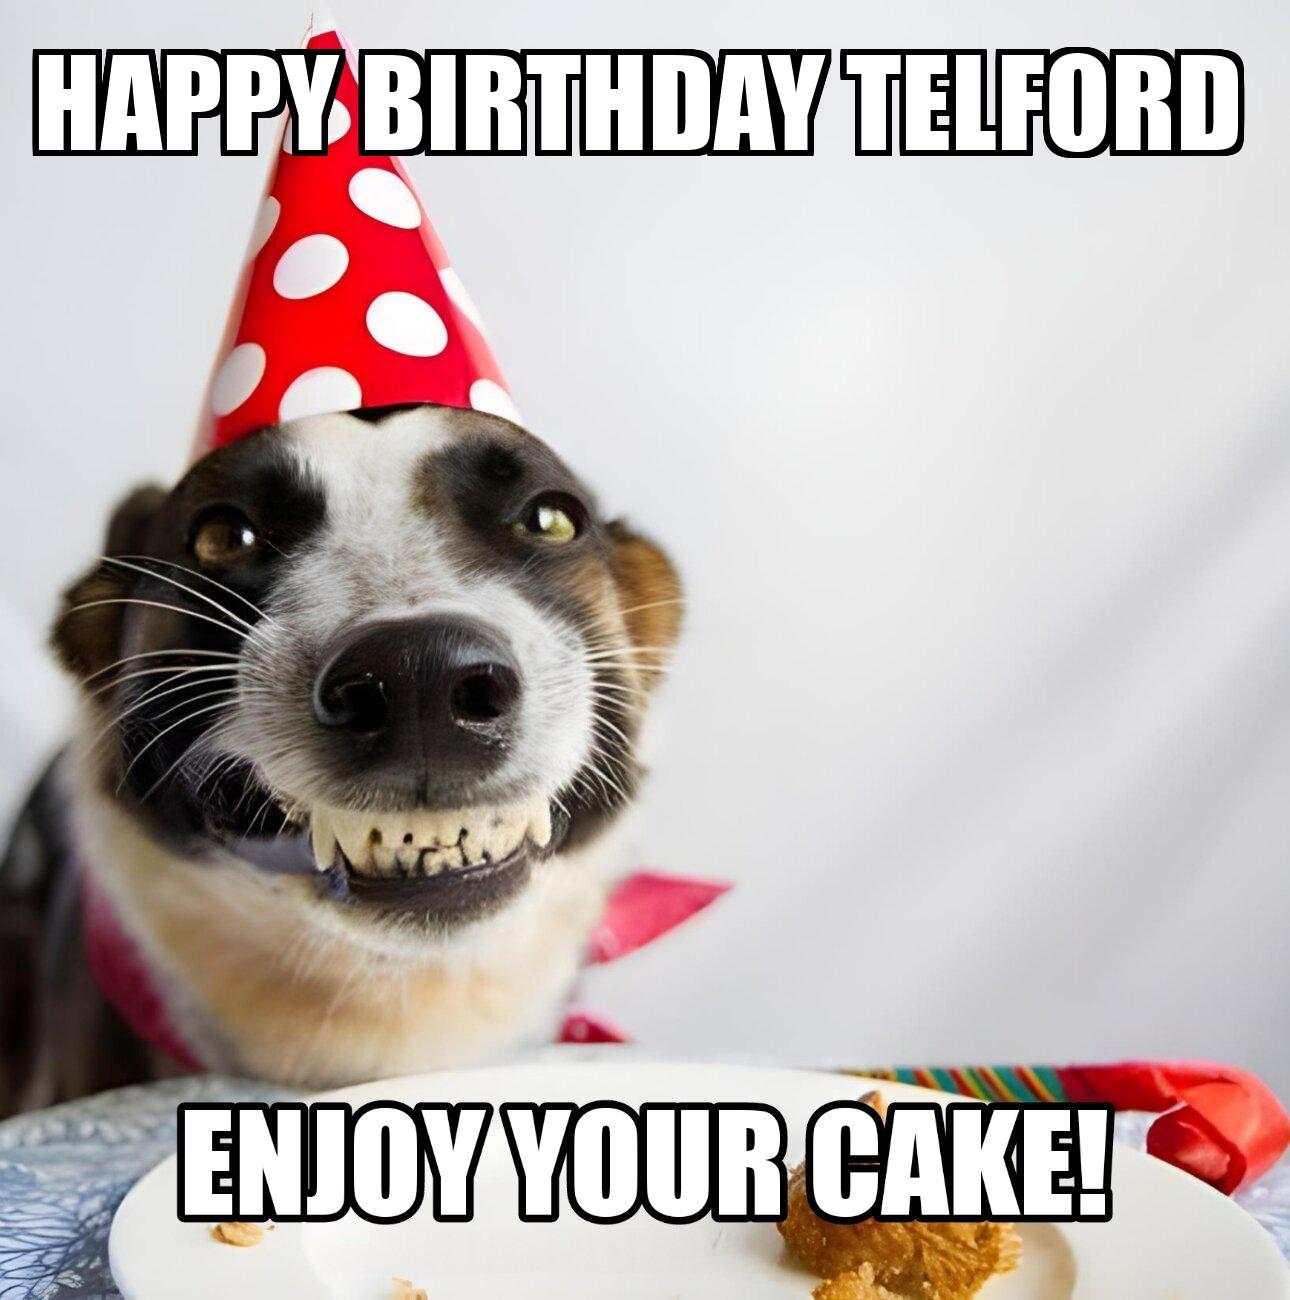 Happy Birthday Telford Enjoy Your Cake Dog Meme